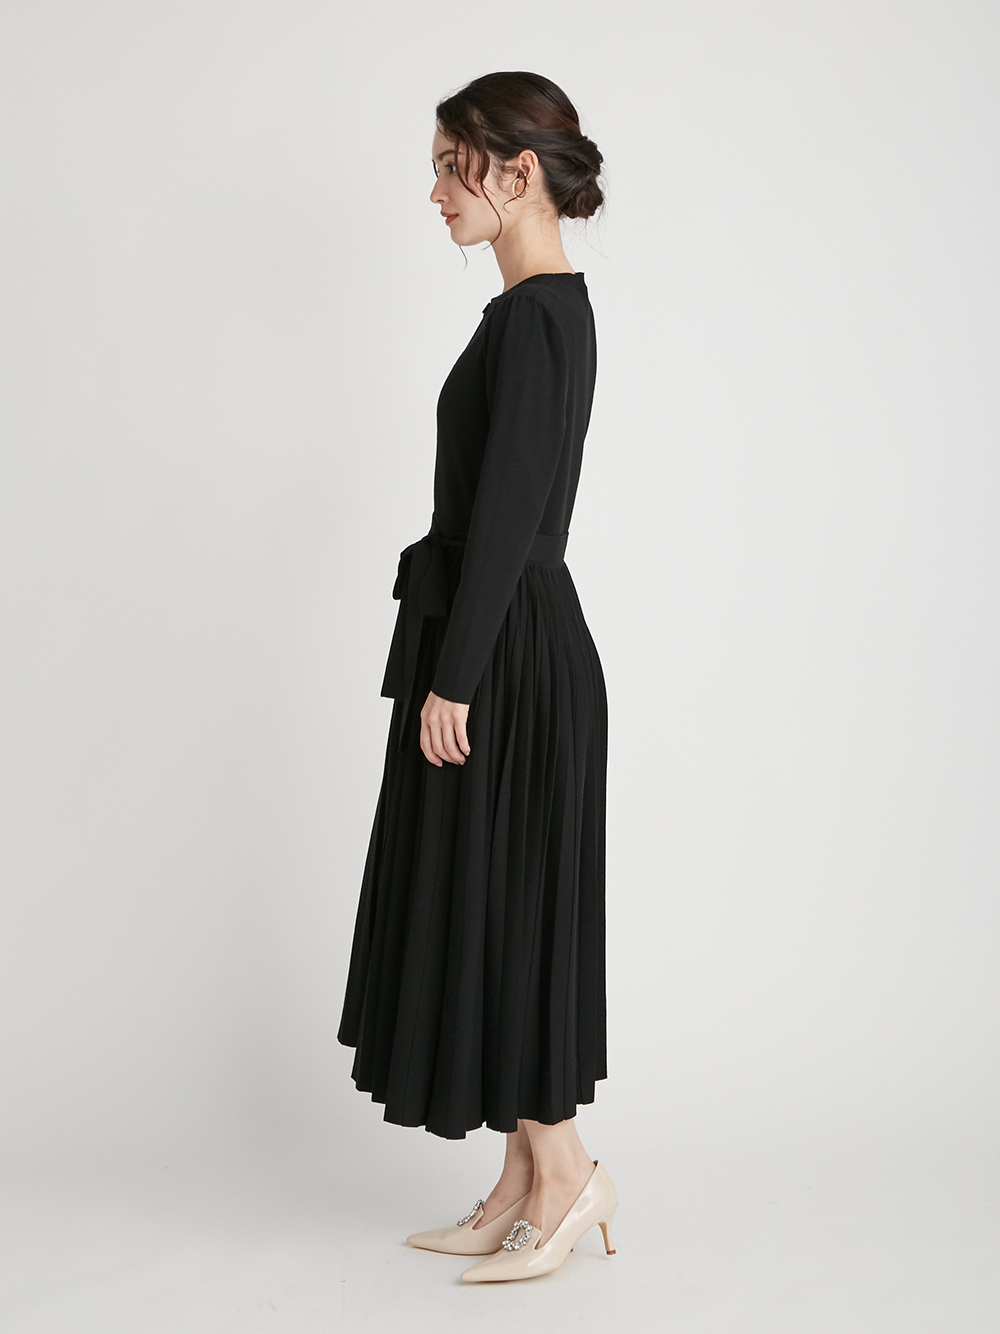 クリスタルプリーツニットワンピース ニットワンピース Dress ドレス Celford セルフォード の通販サイト 公式